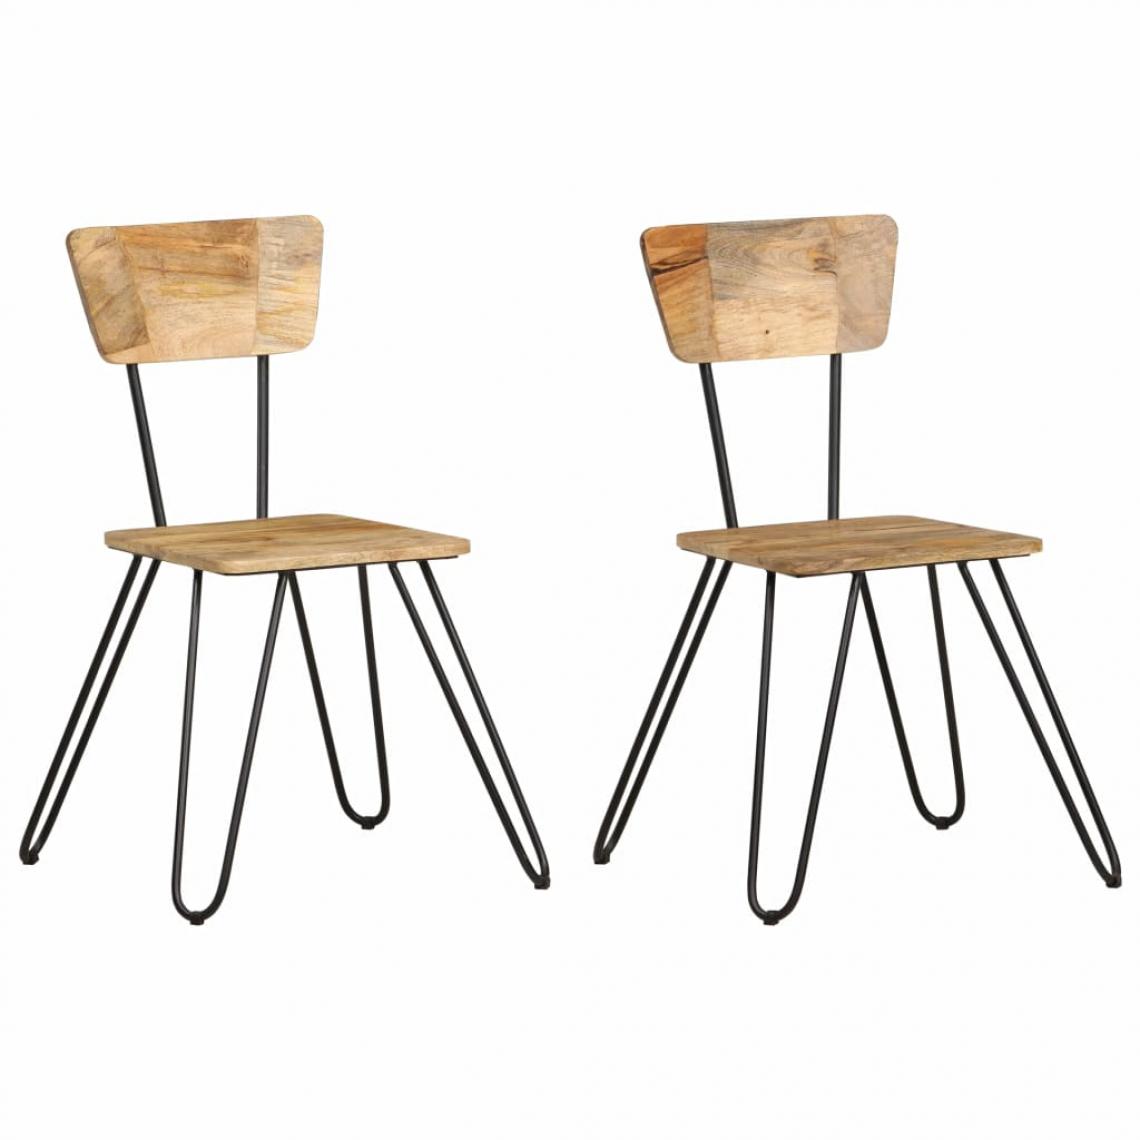 Decoshop26 - Lot de 2 chaises de salle à manger cuisine design moderne bois solide de manguier CDS020290 - Chaises